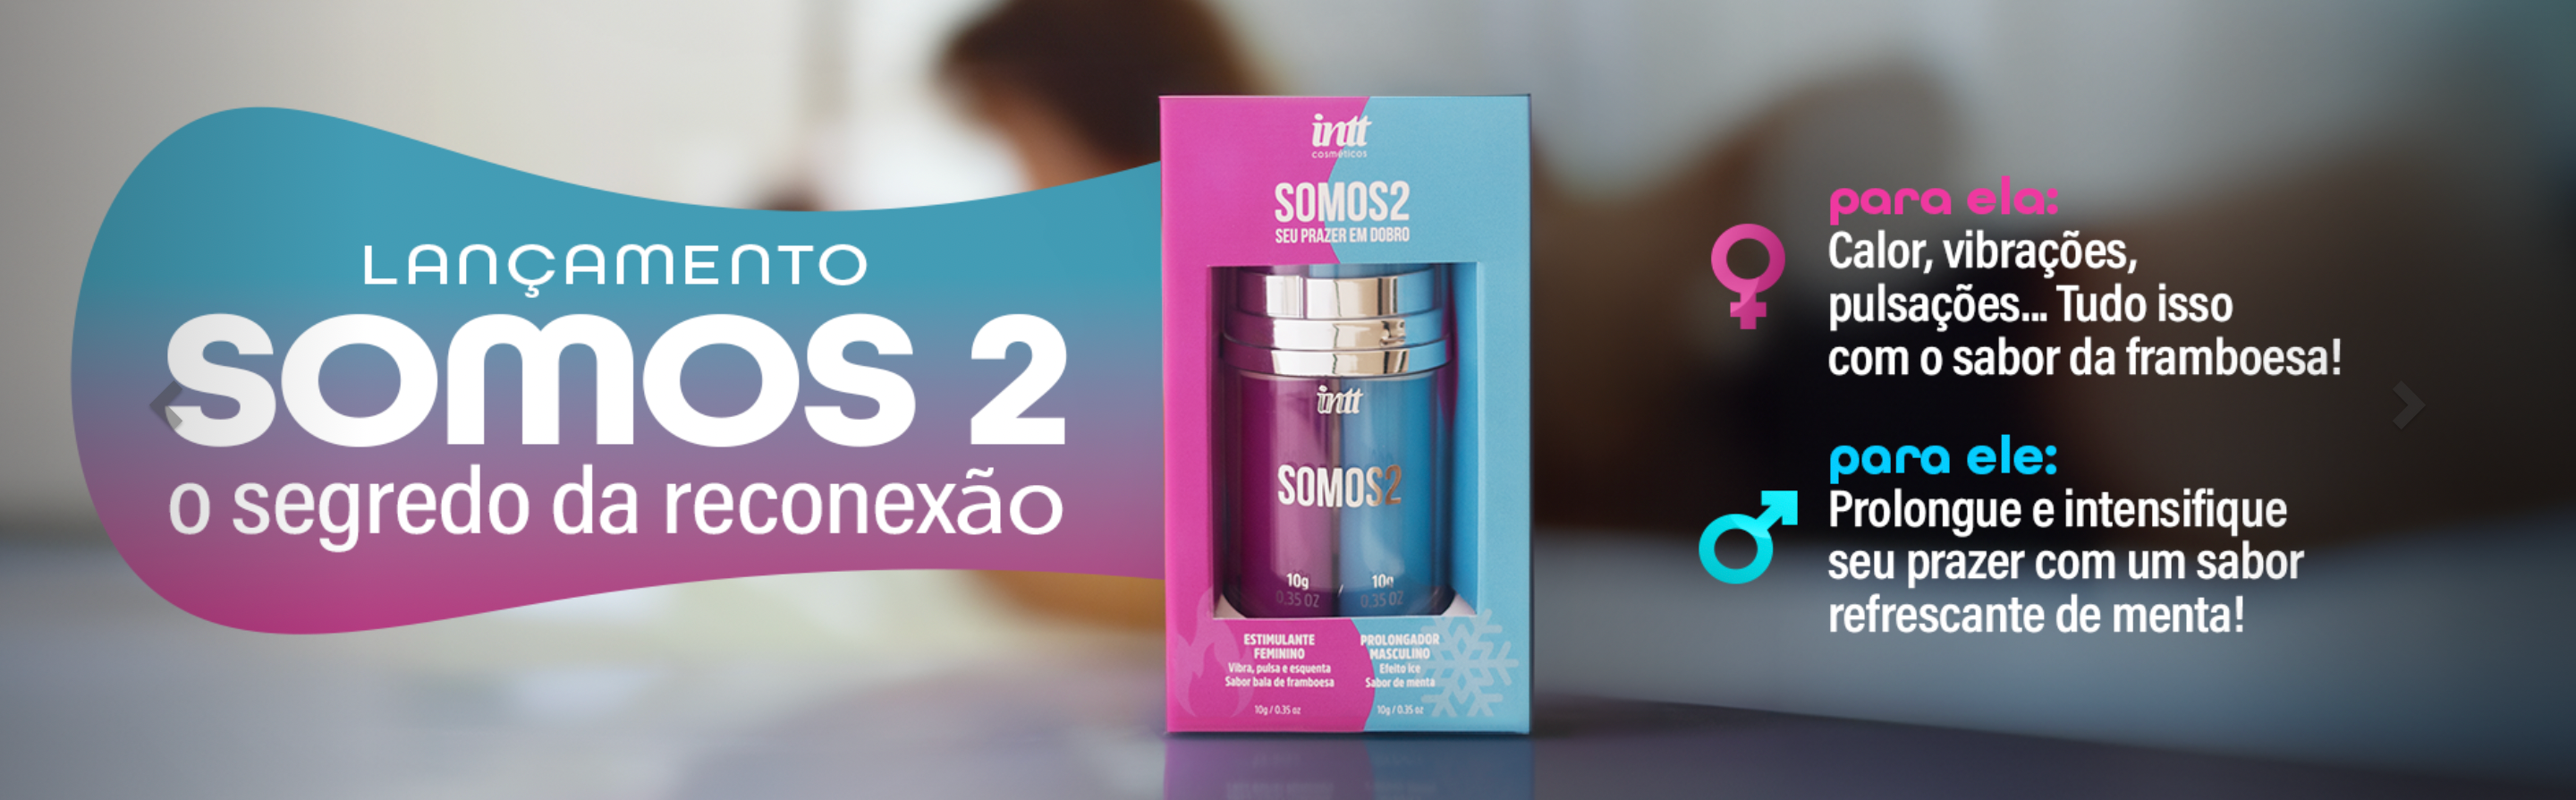 O SOMOS2 apresenta dois géis divididos em tubetes distintos em uma mesma embalagem: um rosa, destinado à mulher, e outro azul, destinado ao homem.
